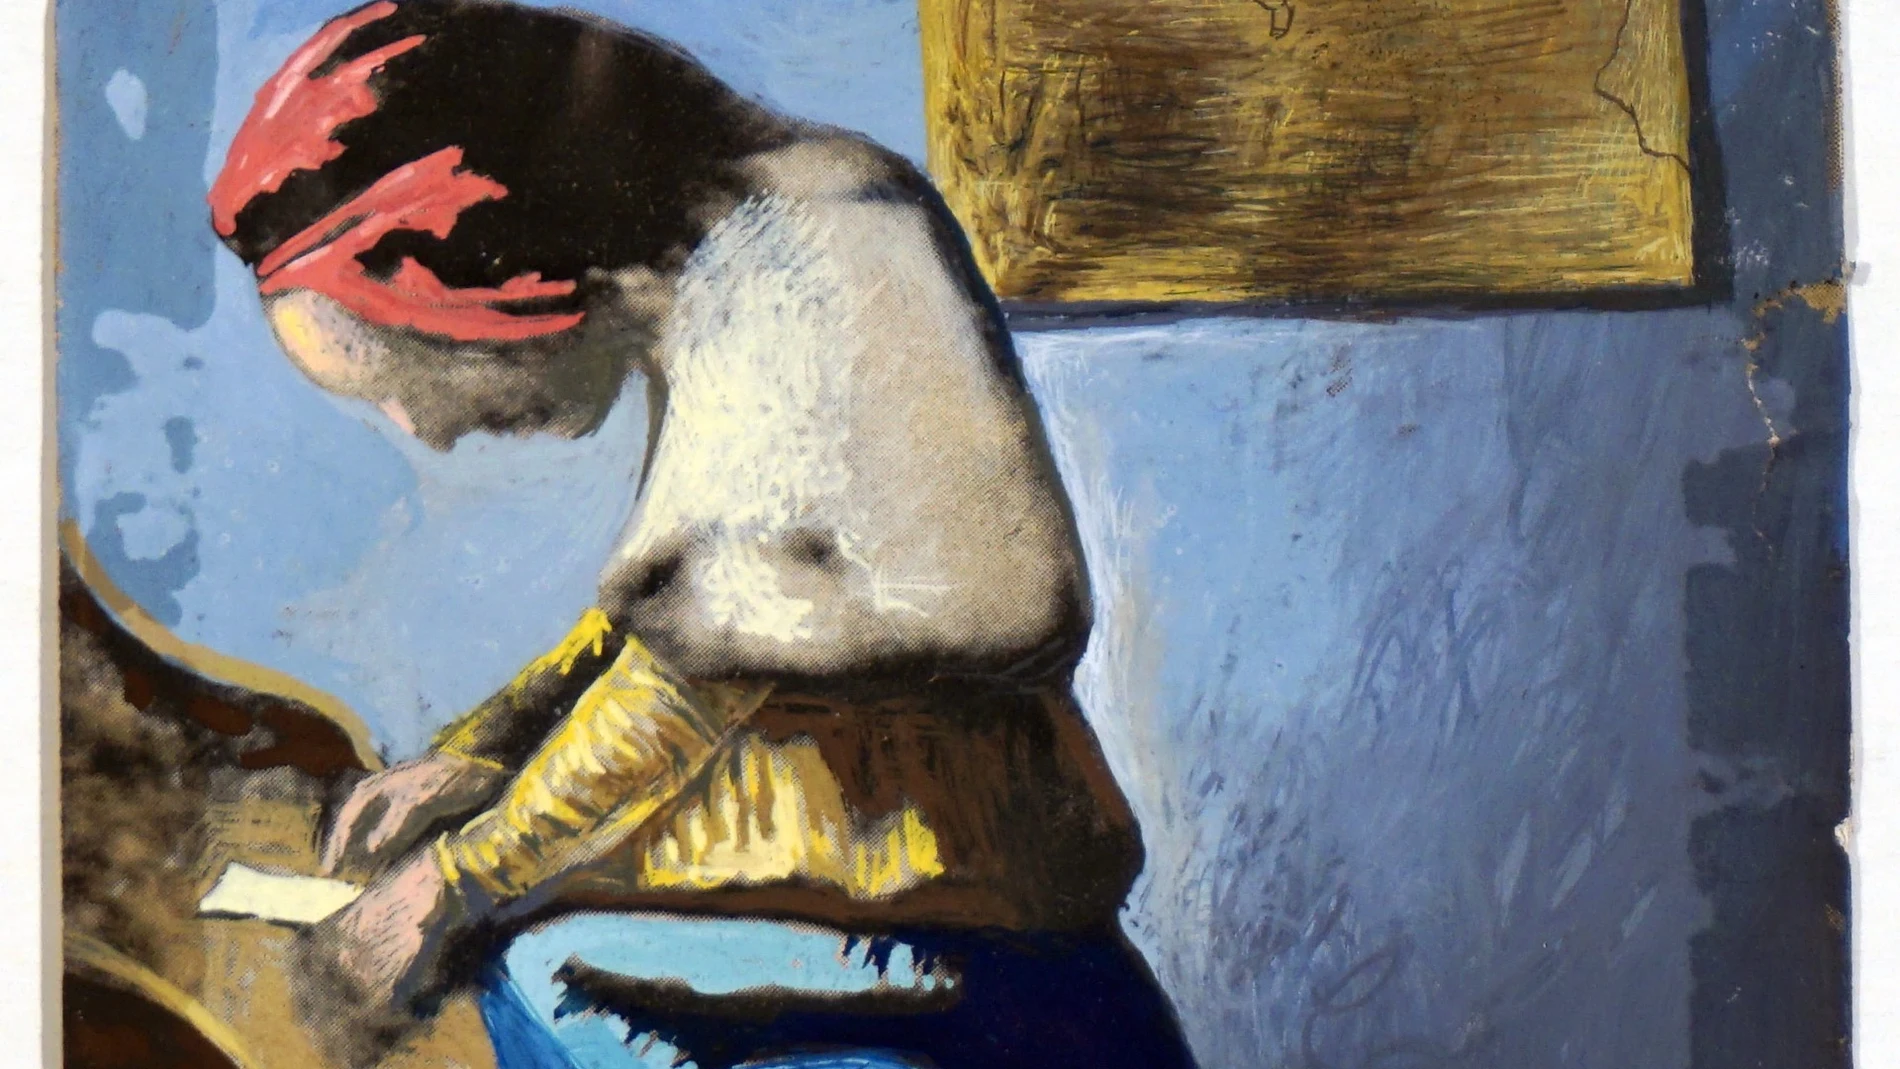 "Doble imagen con la aparición de una figura de Vermeer en la cara de Abraham Lincoln", de Salvador Dalí